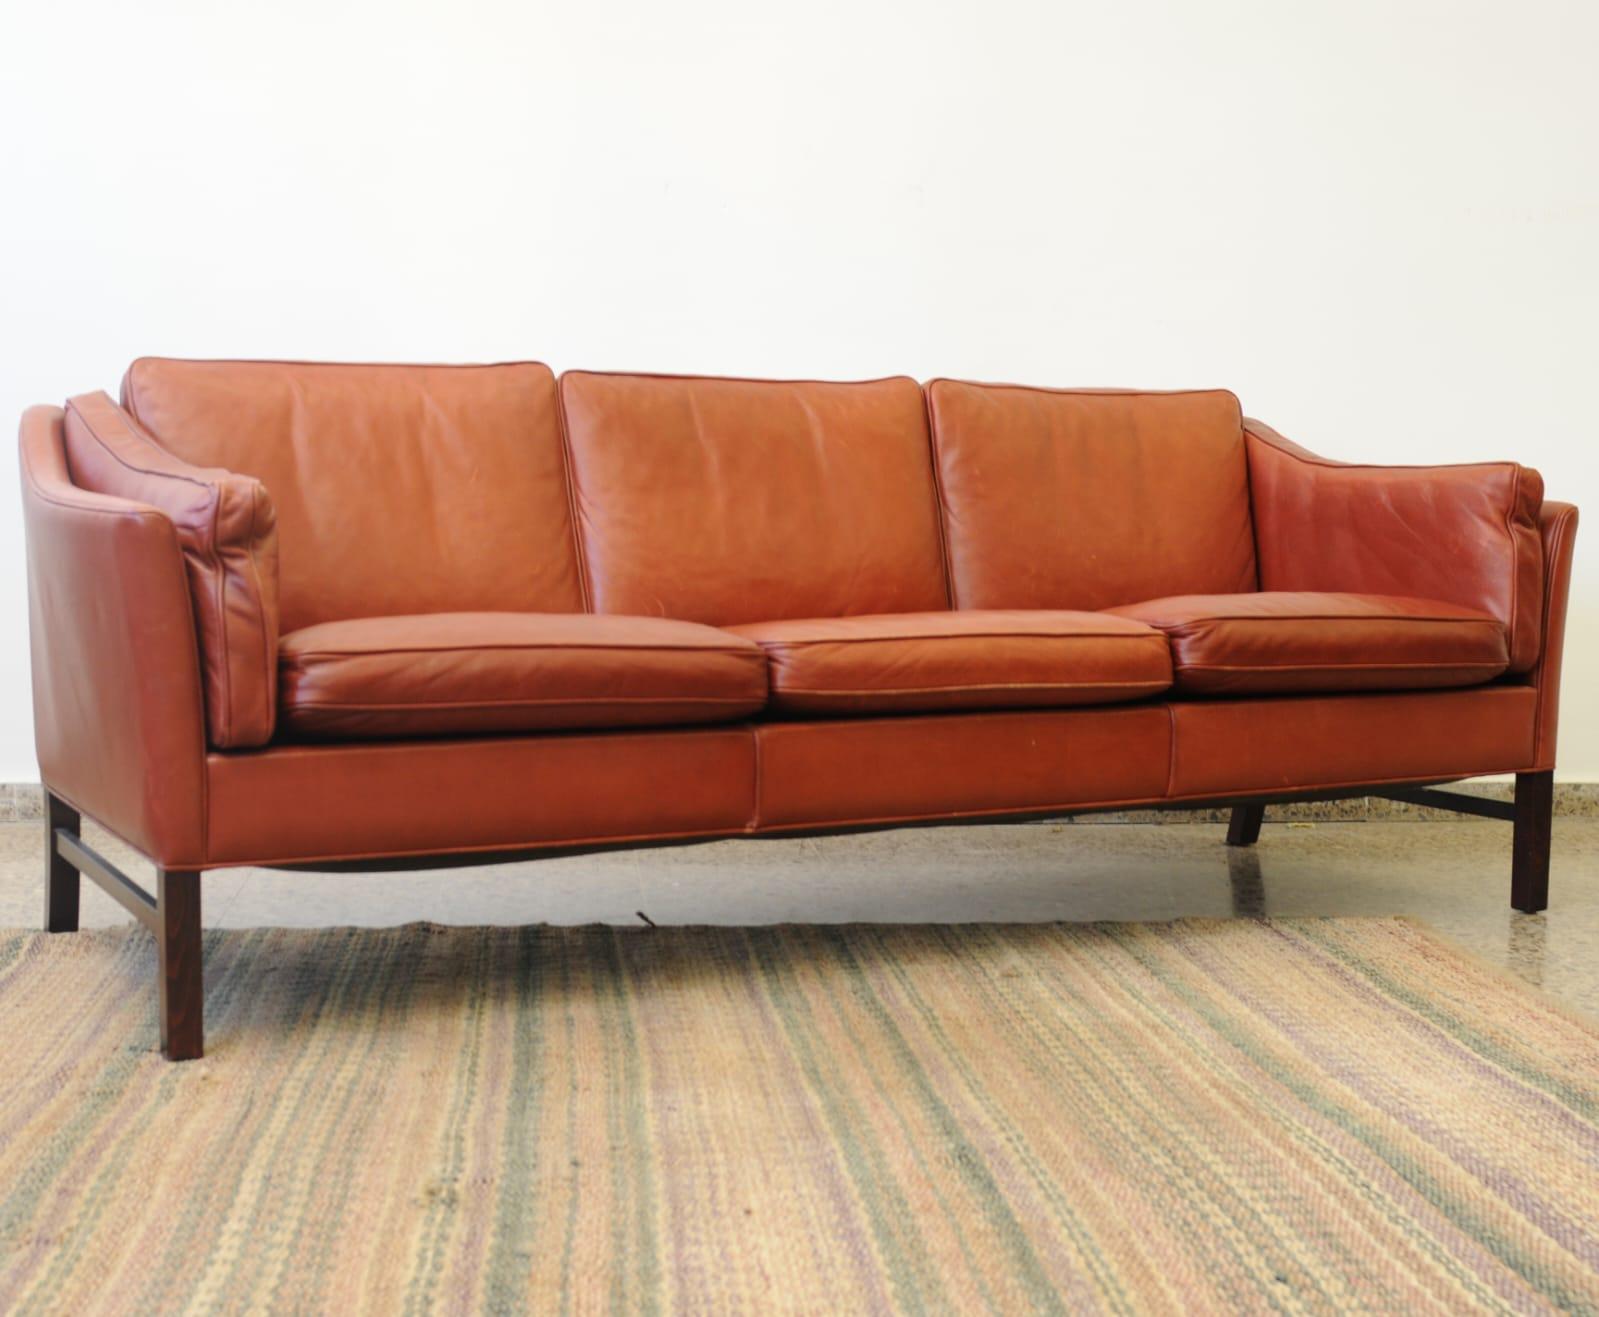 Vintage By Dreisitzer EVA Modell Büffelleder Sofa, Design von Stouby Polster Møbelfabrik aus Dänemark ca. Mitte der 1960er Jahre. 

Das Gestell besteht aus massivem Buchenholz, das mit einer starken Lederauflage verbunden ist, mit gepolsterten